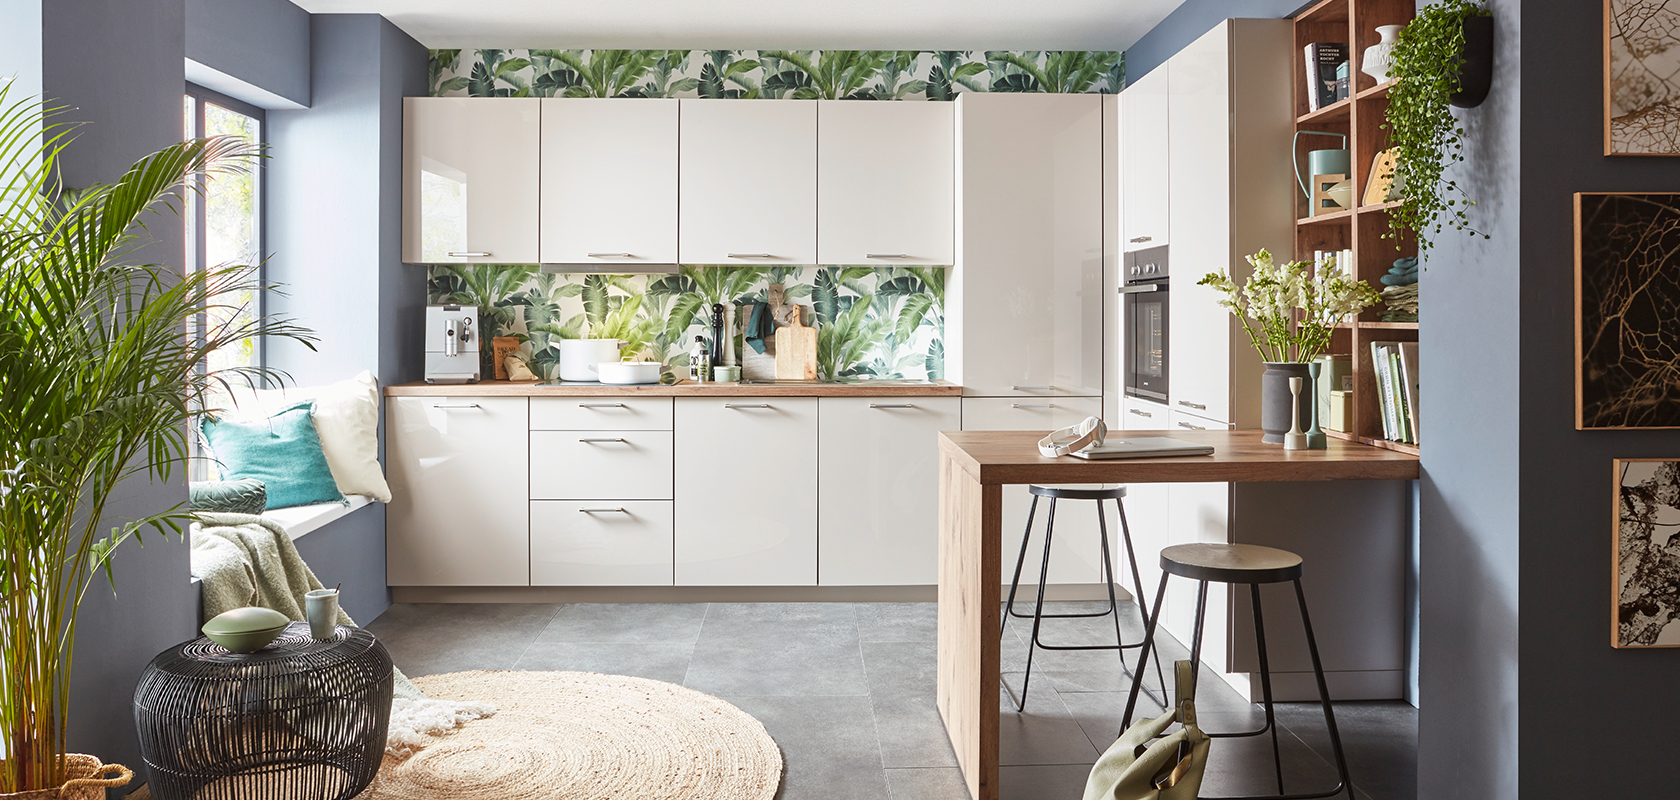 Moderne keukeninterieur met witte kasten, tropisch behang, houten werkblad, stijlvolle barkrukken en groene plantaccenten die een gezellige, eigentijdse ruimte creëren.